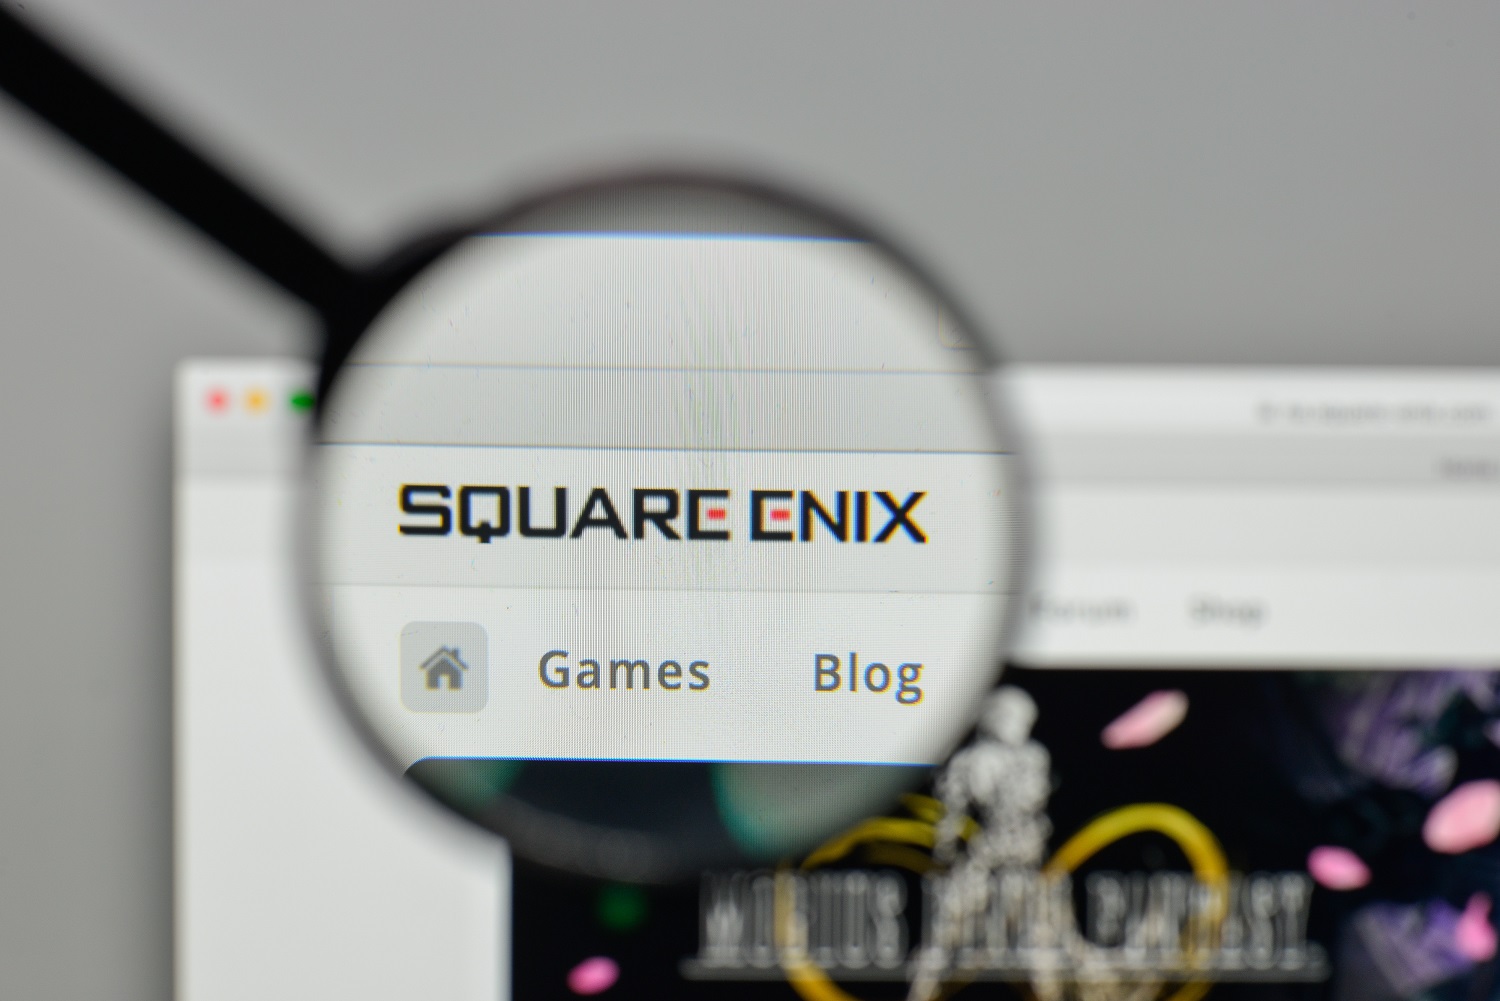 SQUARE ENIX  The Official SQUARE ENIX Website - Games